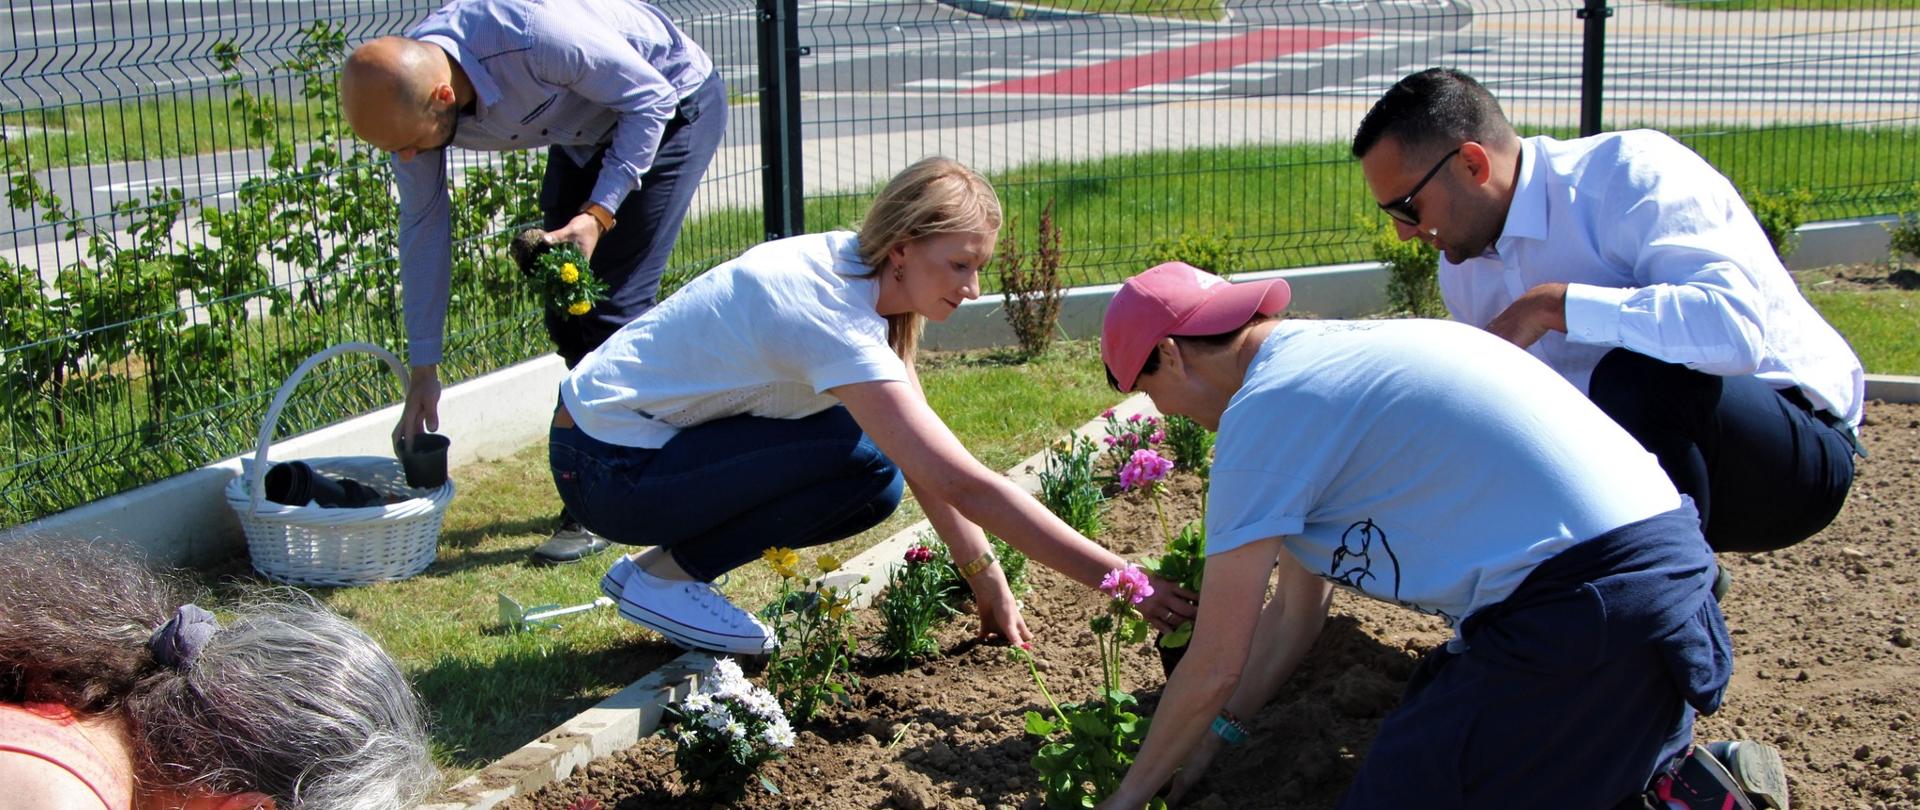 Wicestarosta Polkowicki, Dyrektor Powiatowego Centrum Pomocy Rodzinie, Kierownik Warsztatu Terapii Zajęciowej oraz dwie kobiety sadzą kwiaty w ogrodzie 